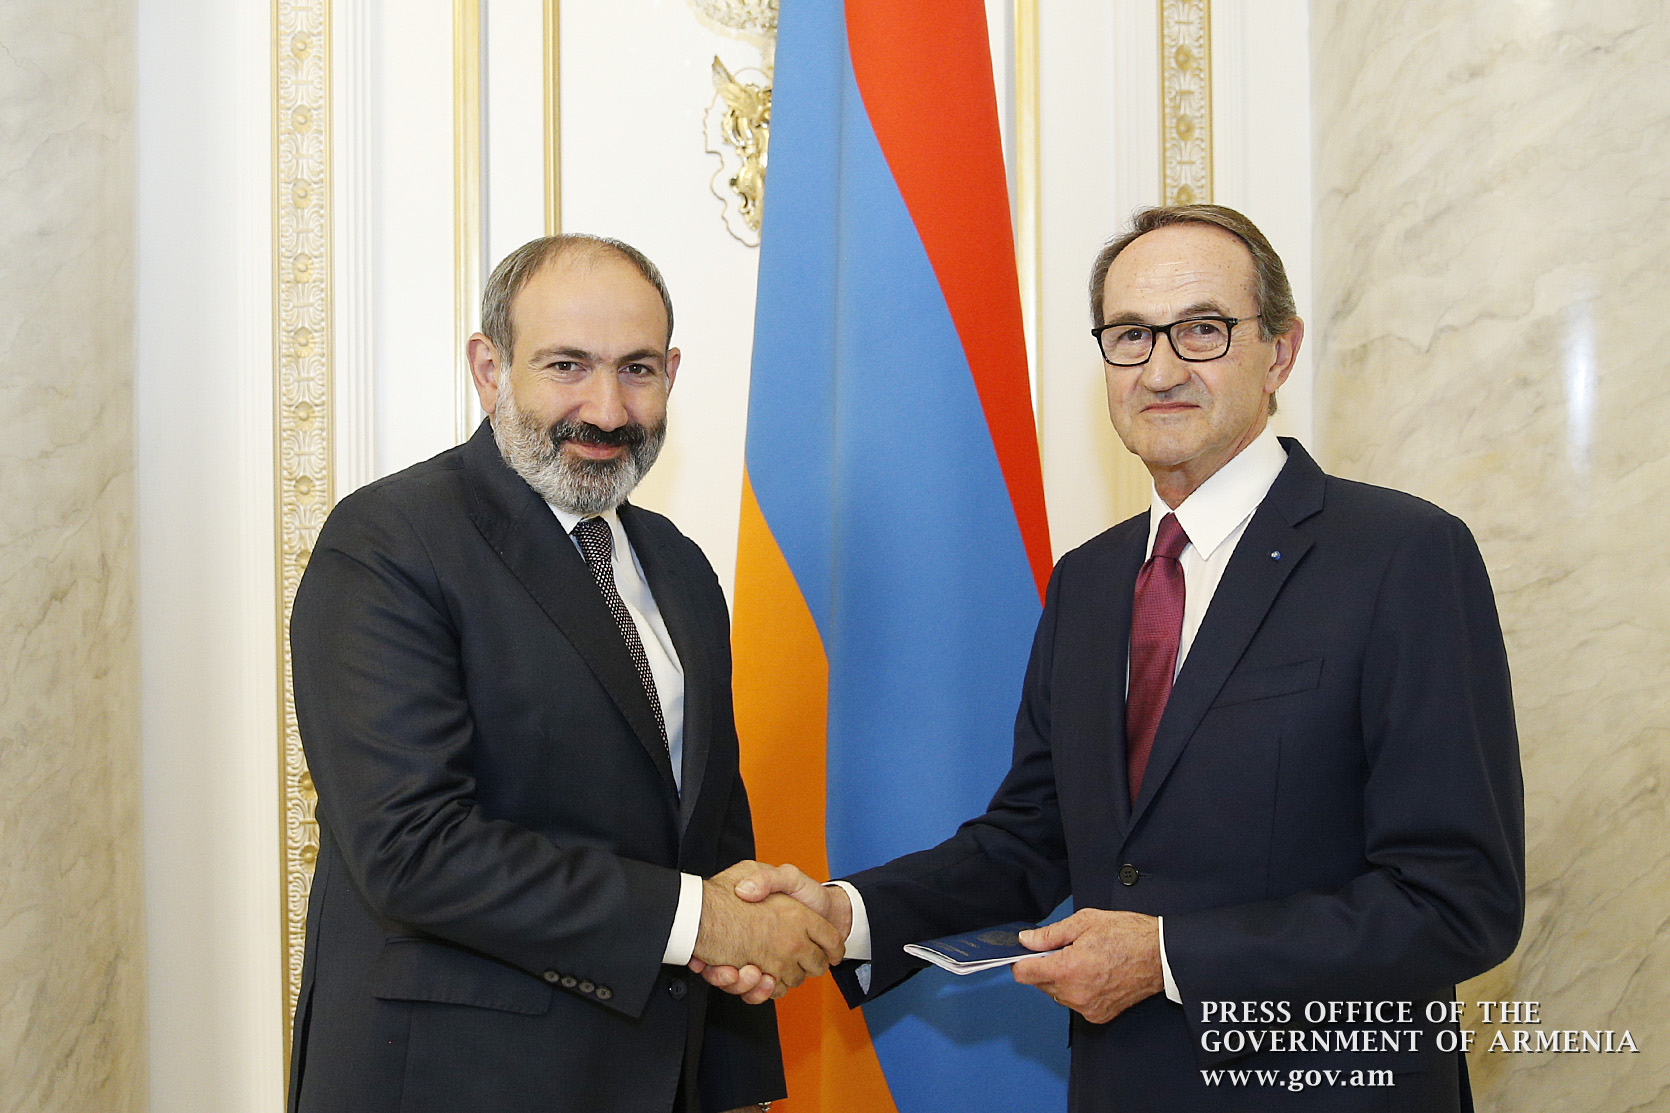 PM Pashinyan hands Armenian Citizen’s Passport to René Rouquet